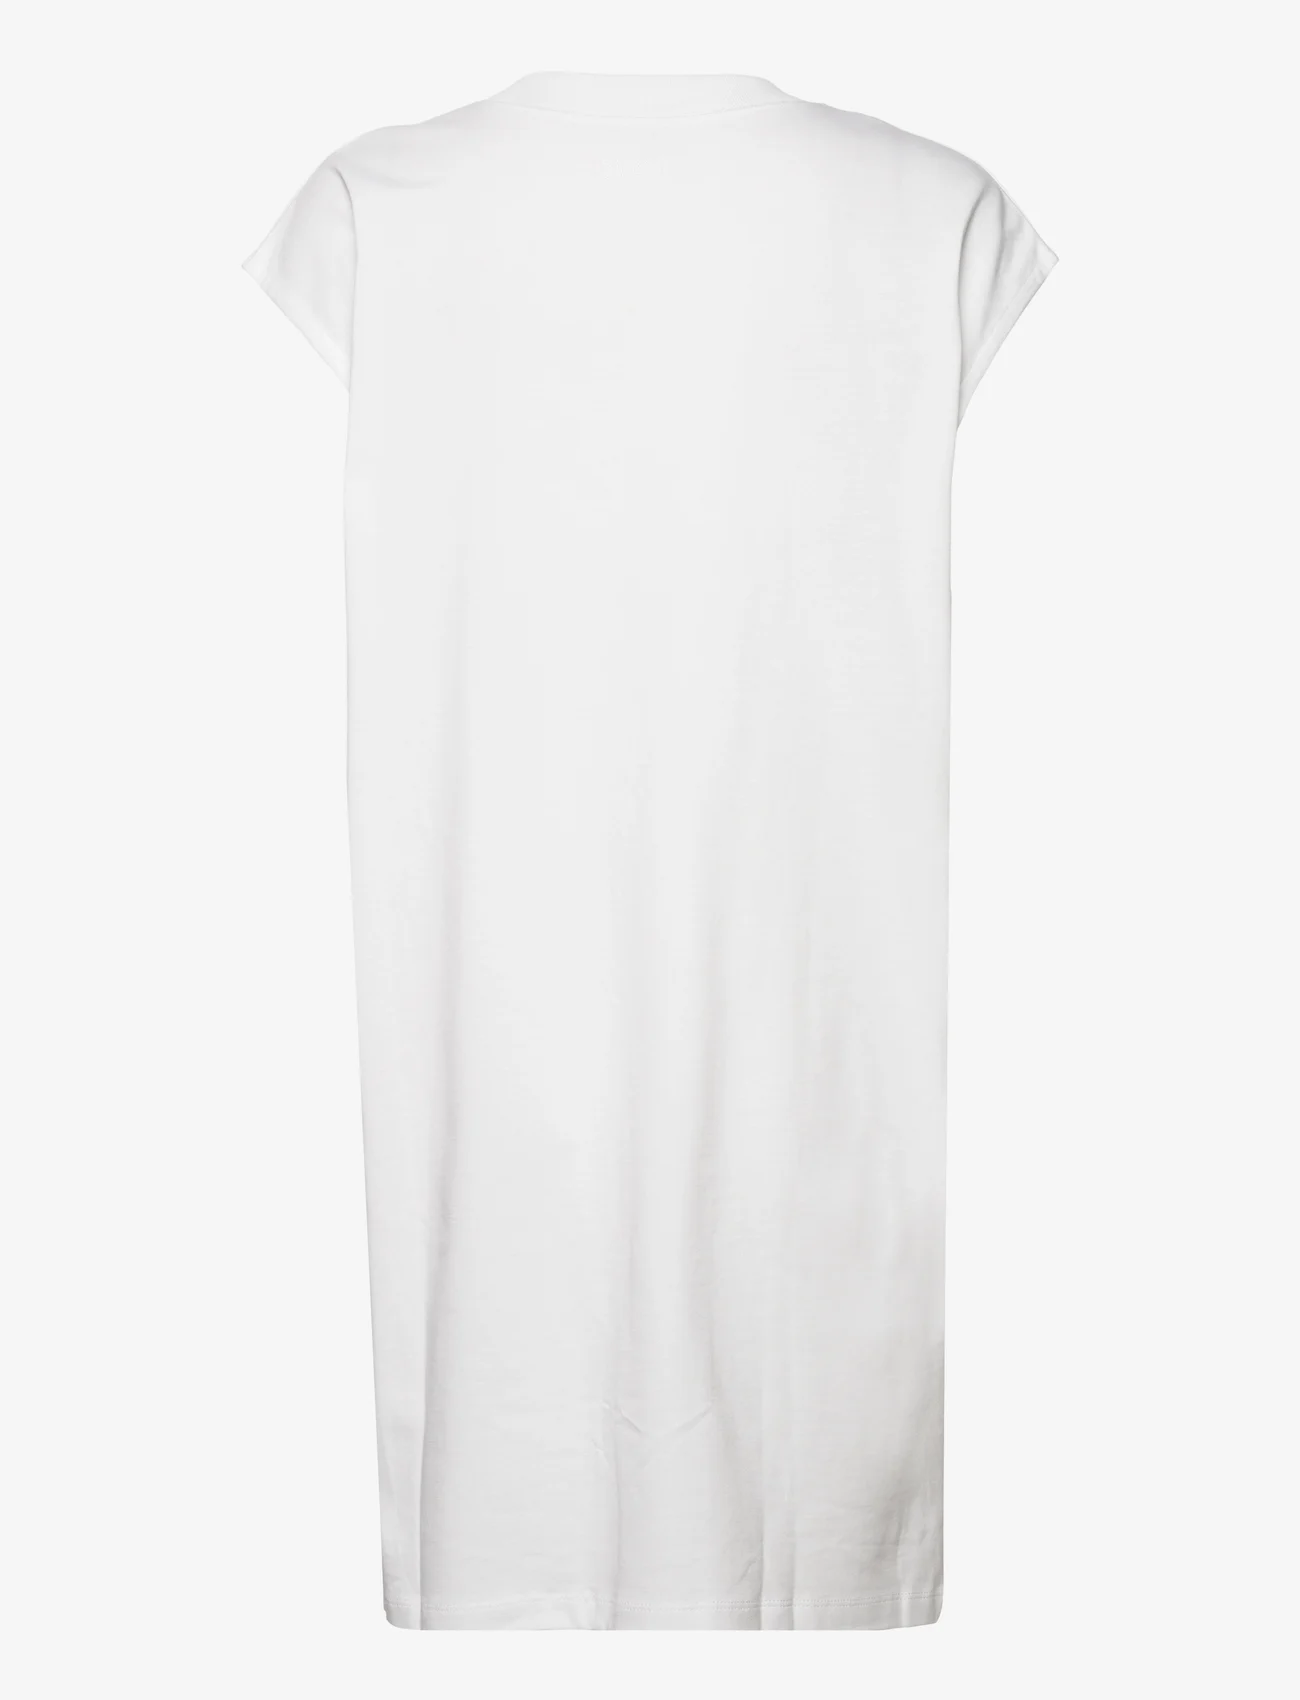 House Of Dagmar - Maggie dress - t-skjortekjoler - white - 1